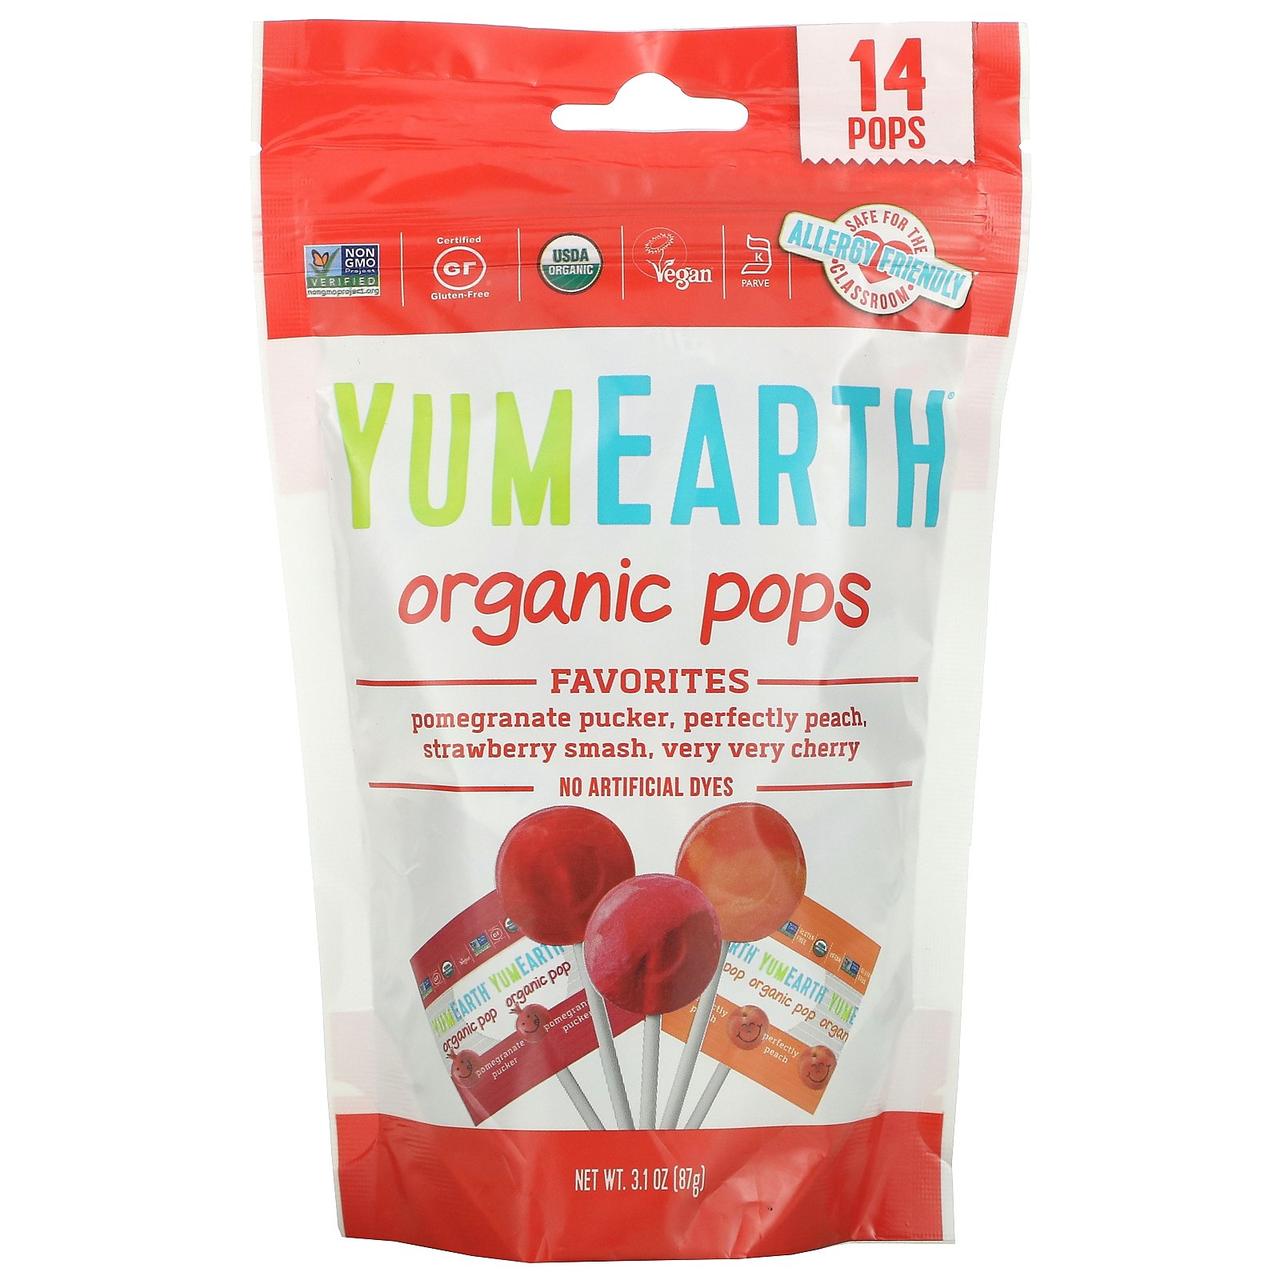 Органічні натуральні фруктові цукерки-льодяники на паличці, Асорті, Yummy Earth, США, в упаковці 14 штук